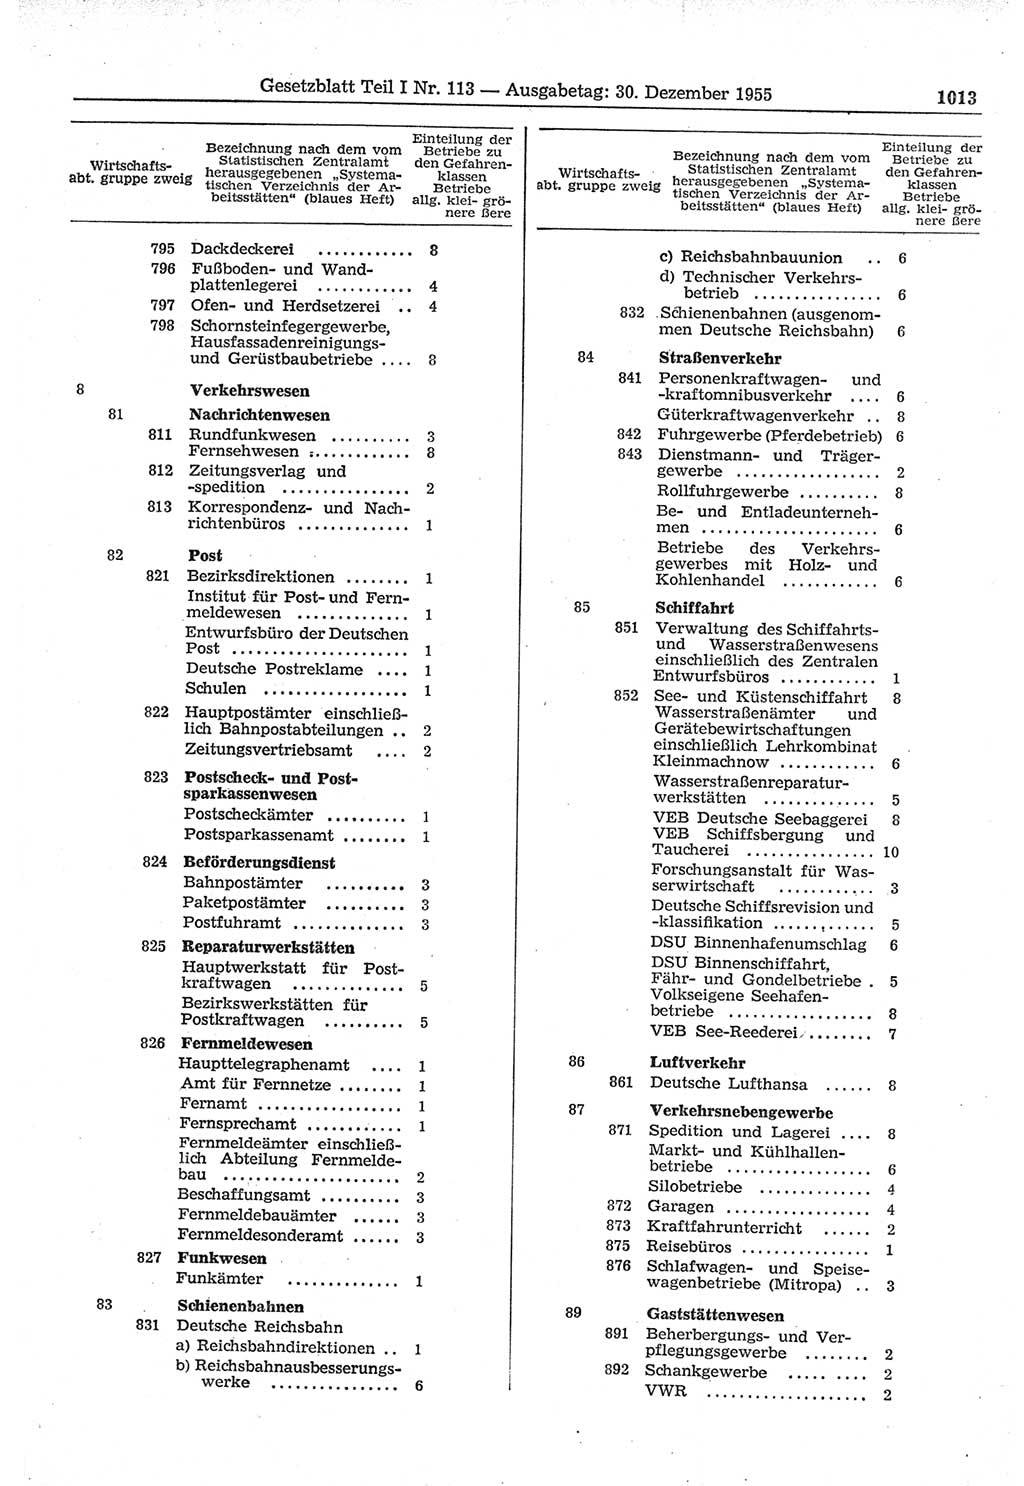 Gesetzblatt (GBl.) der Deutschen Demokratischen Republik (DDR) Teil Ⅰ 1955, Seite 1013 (GBl. DDR Ⅰ 1955, S. 1013)